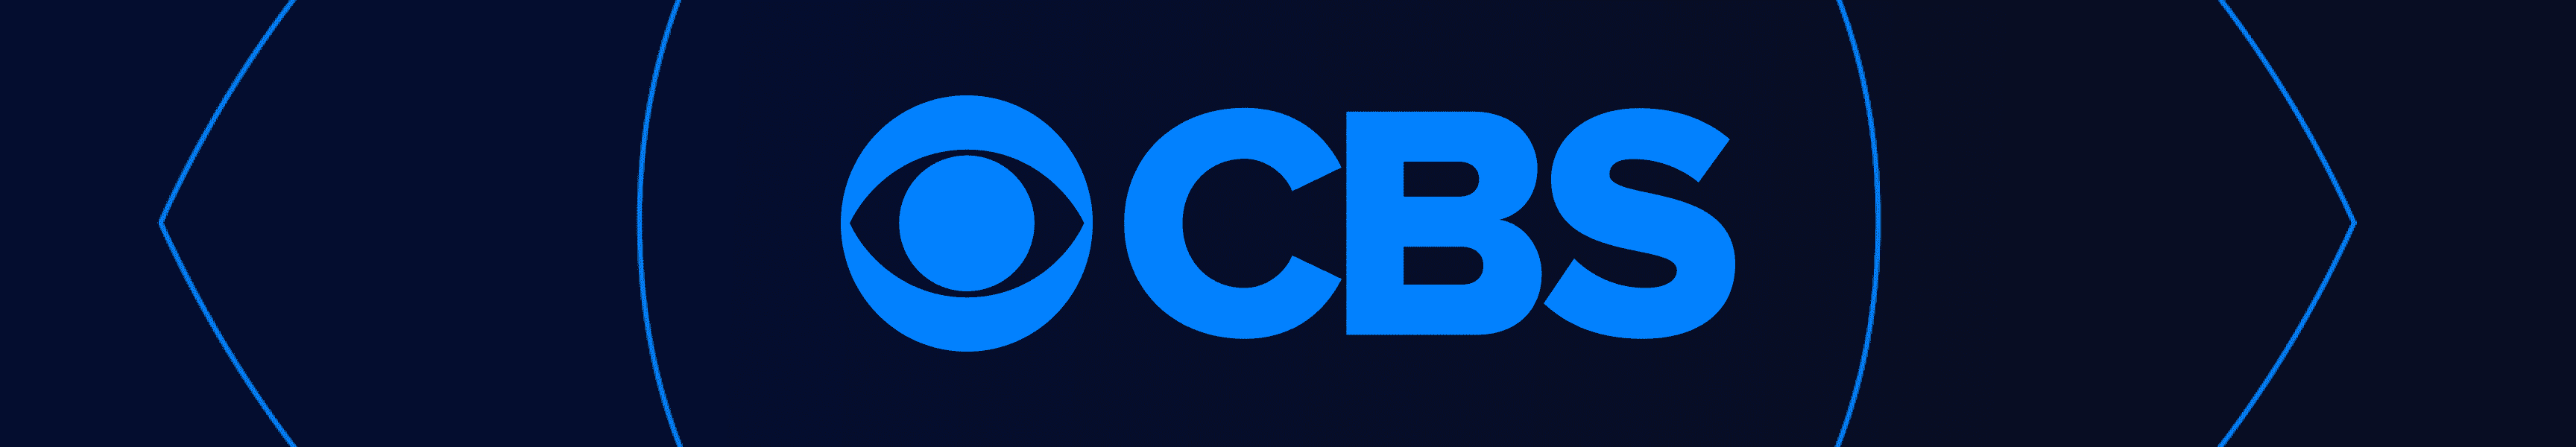 CBS Unterhaltung Aufkleber